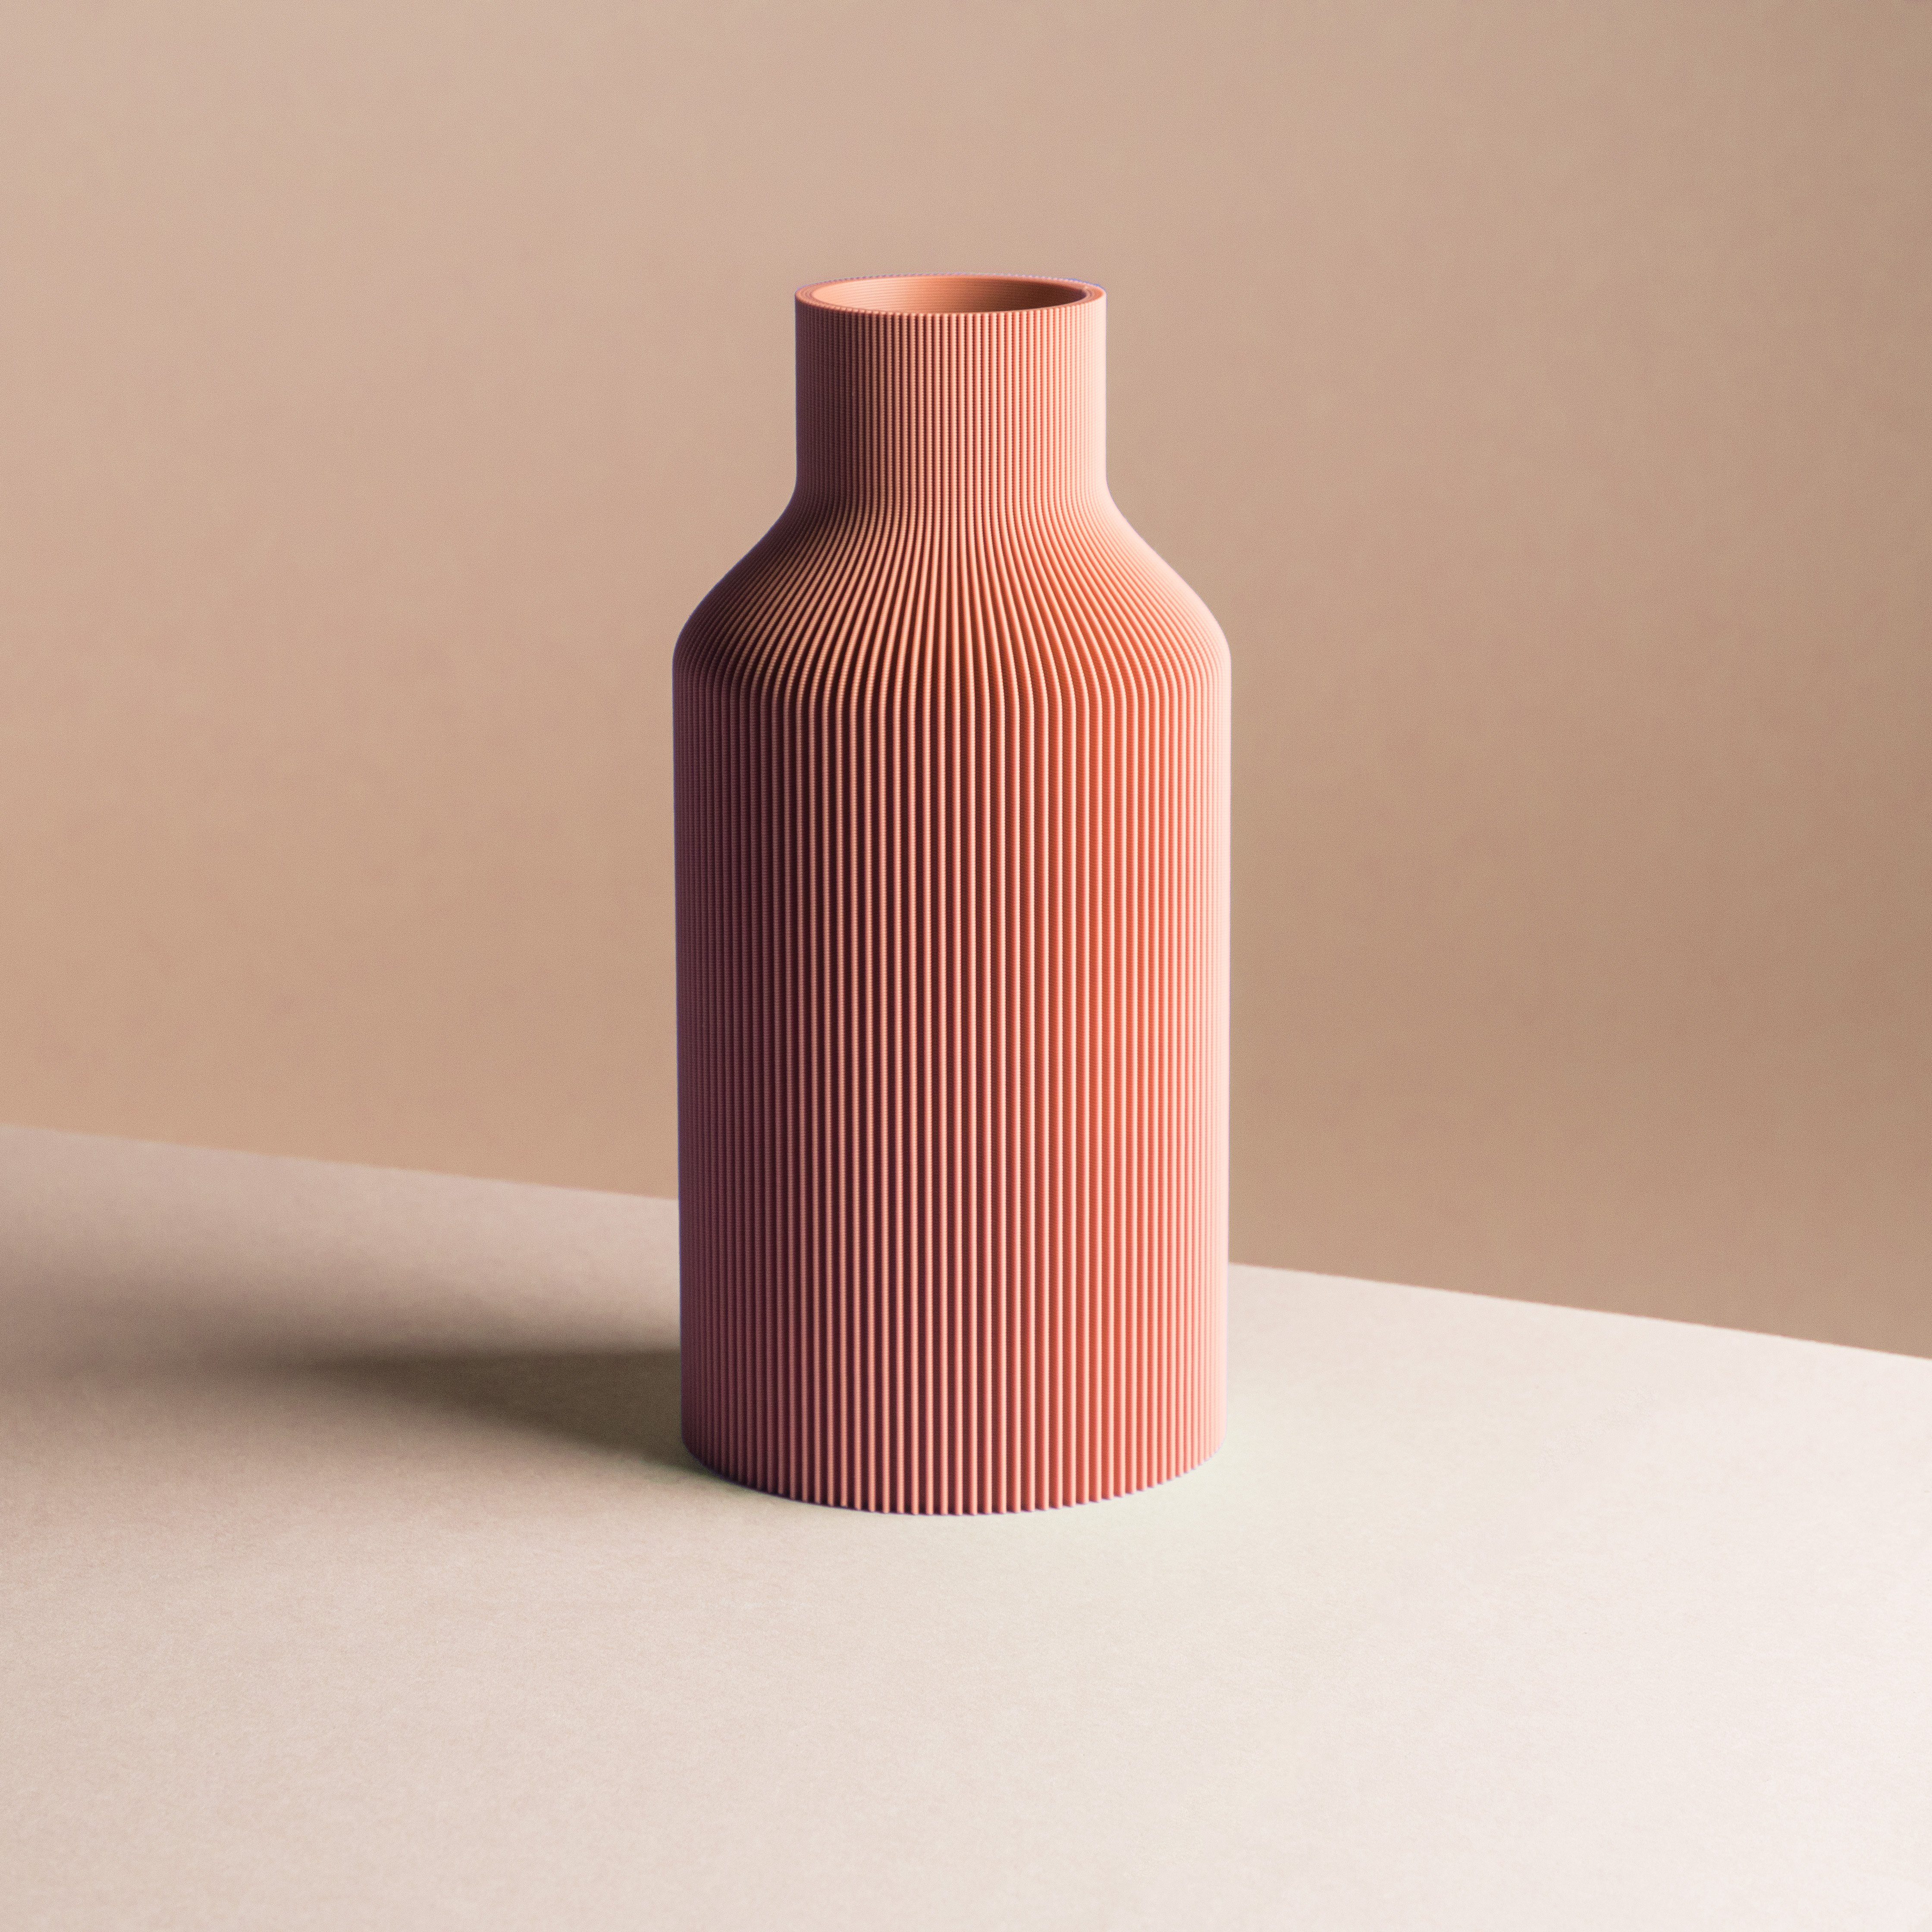 Dennismaass. Dekovase FLASCHE, 3D Druck, wundervolle Rillen-Optik, für Blumen aller Art, dekorative Vase aus dem 3D Drucker terracotta